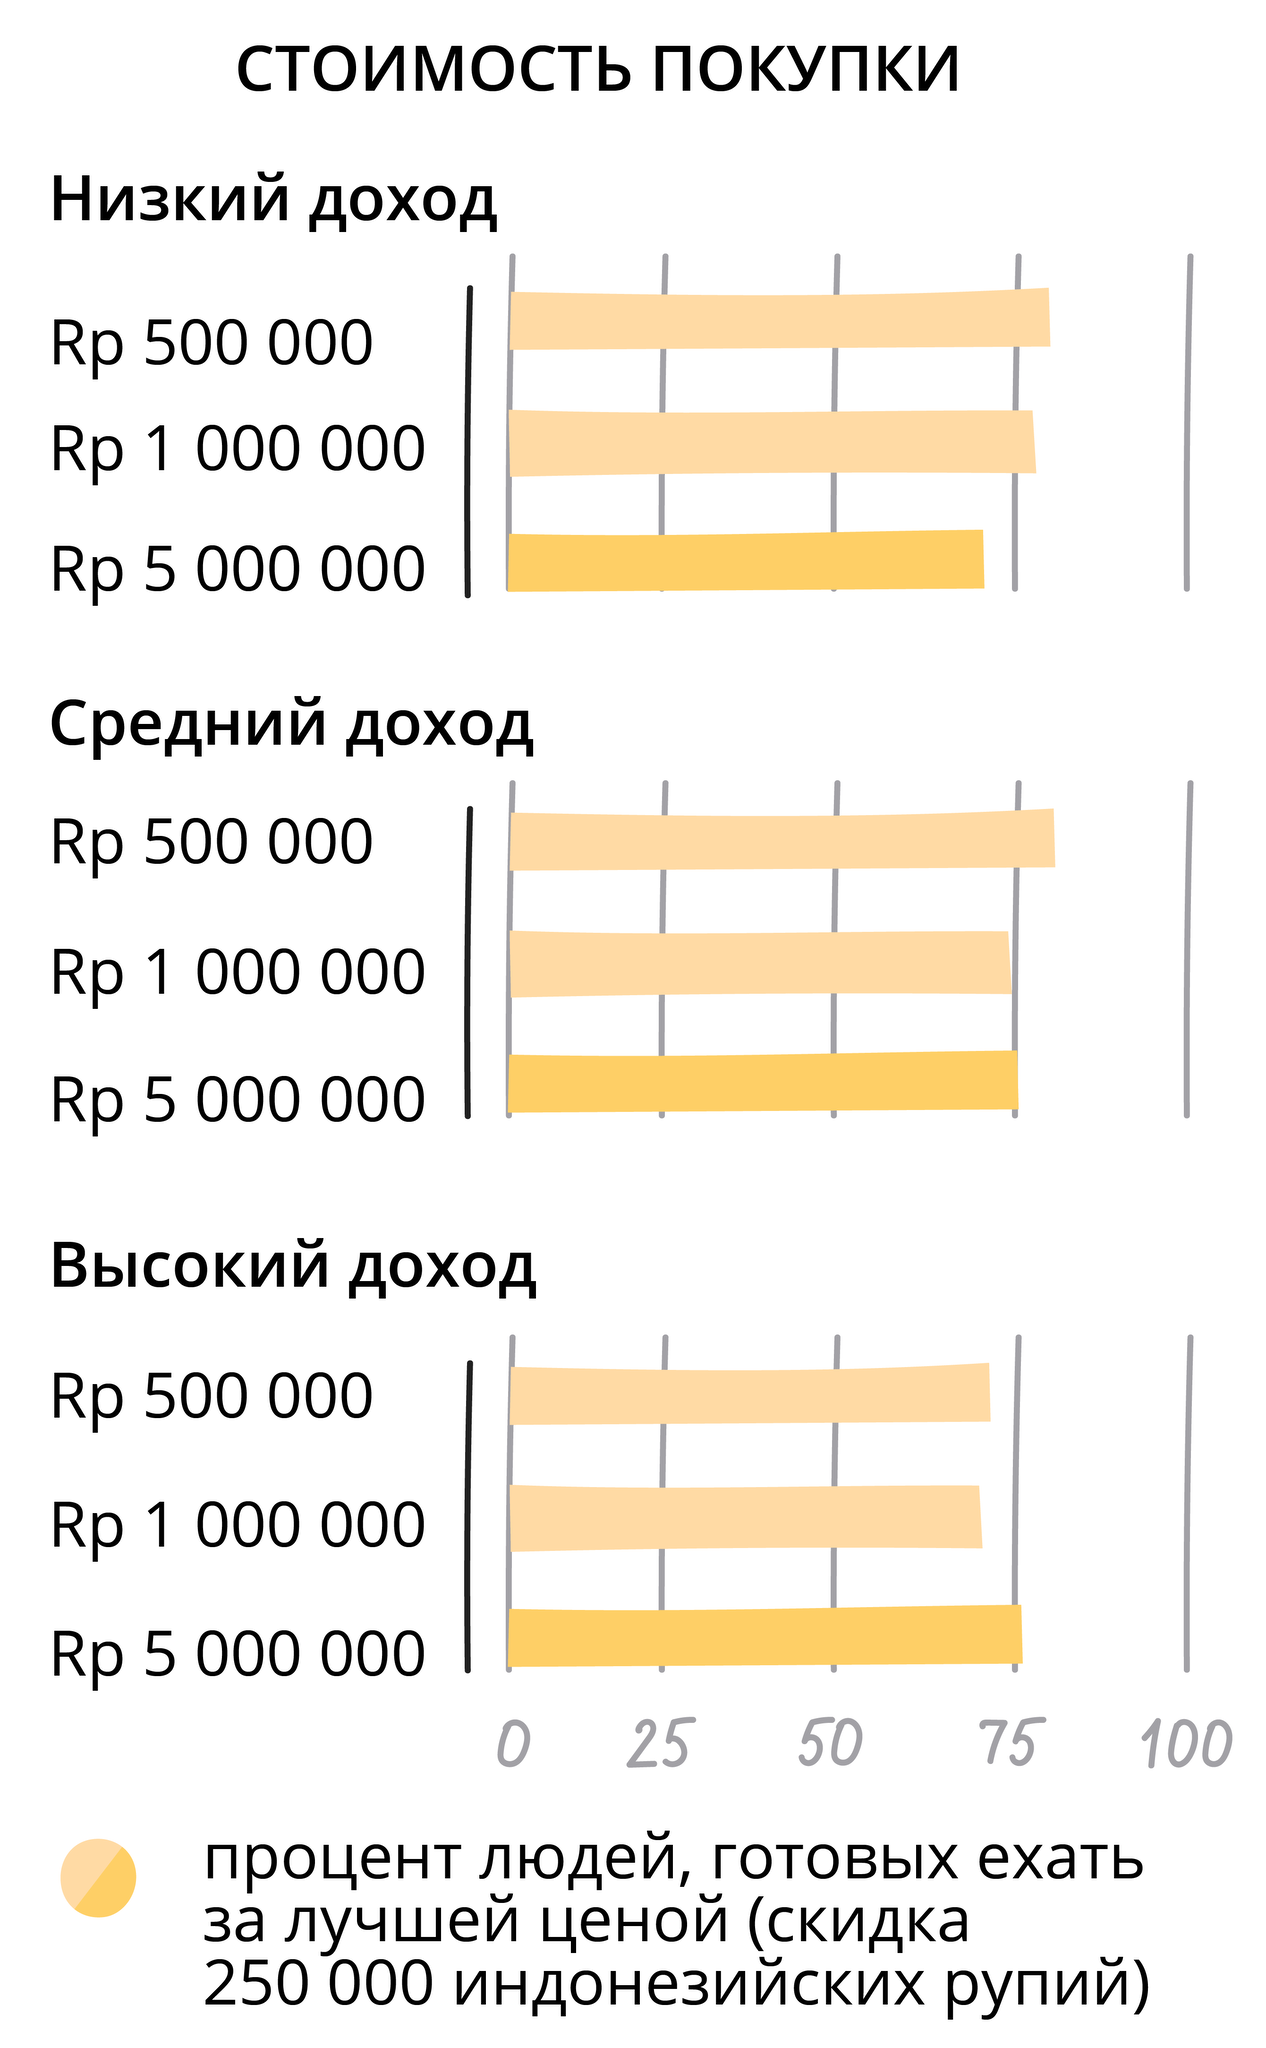 Насколько жители Джакарты (Индонезия) готовы тратить время для экономии денег